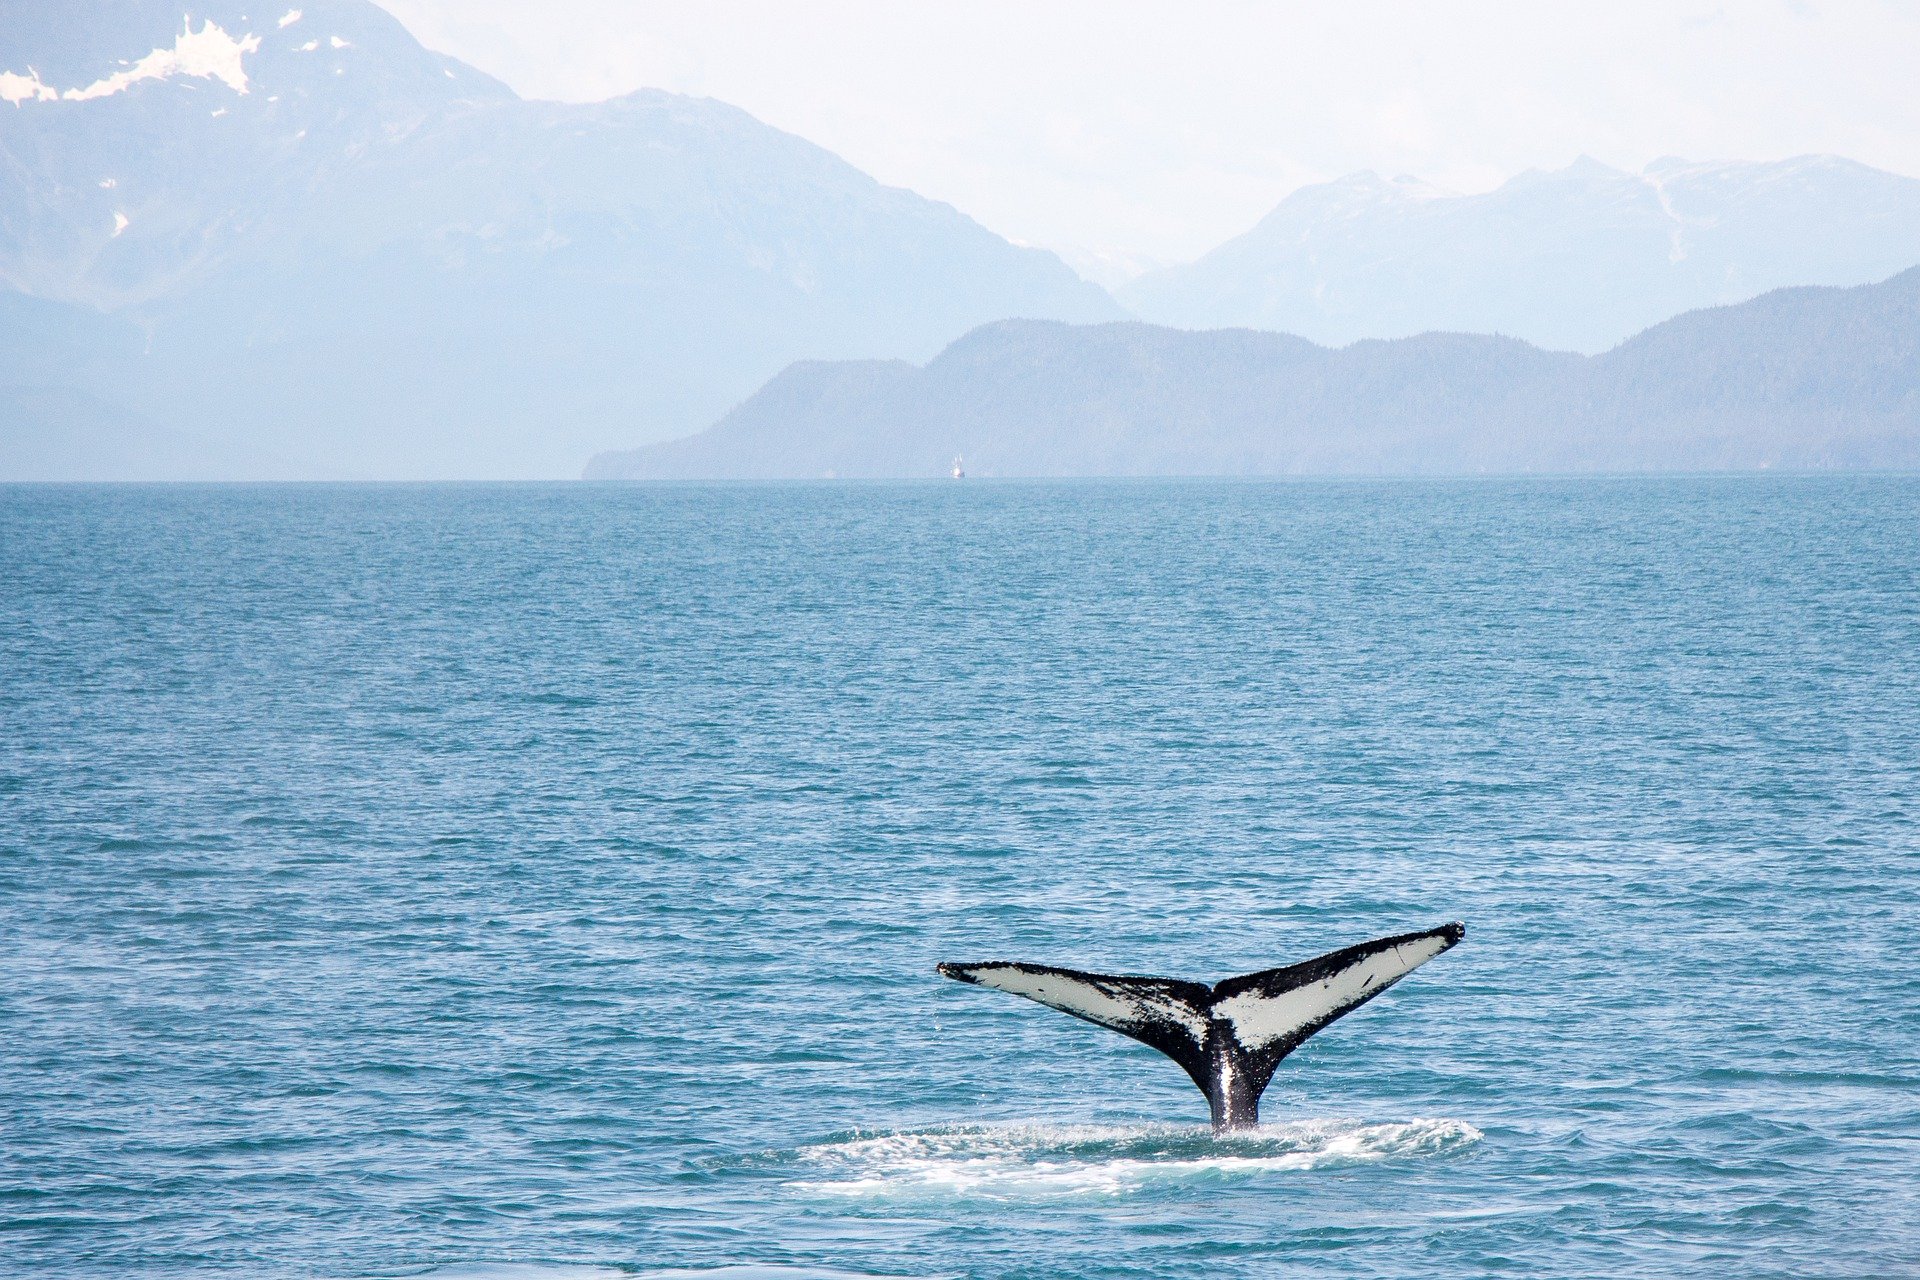 Alt avistamiento-ballenas-canada-mejores-aventuras-del-mundo, title avistamiento-ballenas-canada-mejores-aventuras-del-mundo